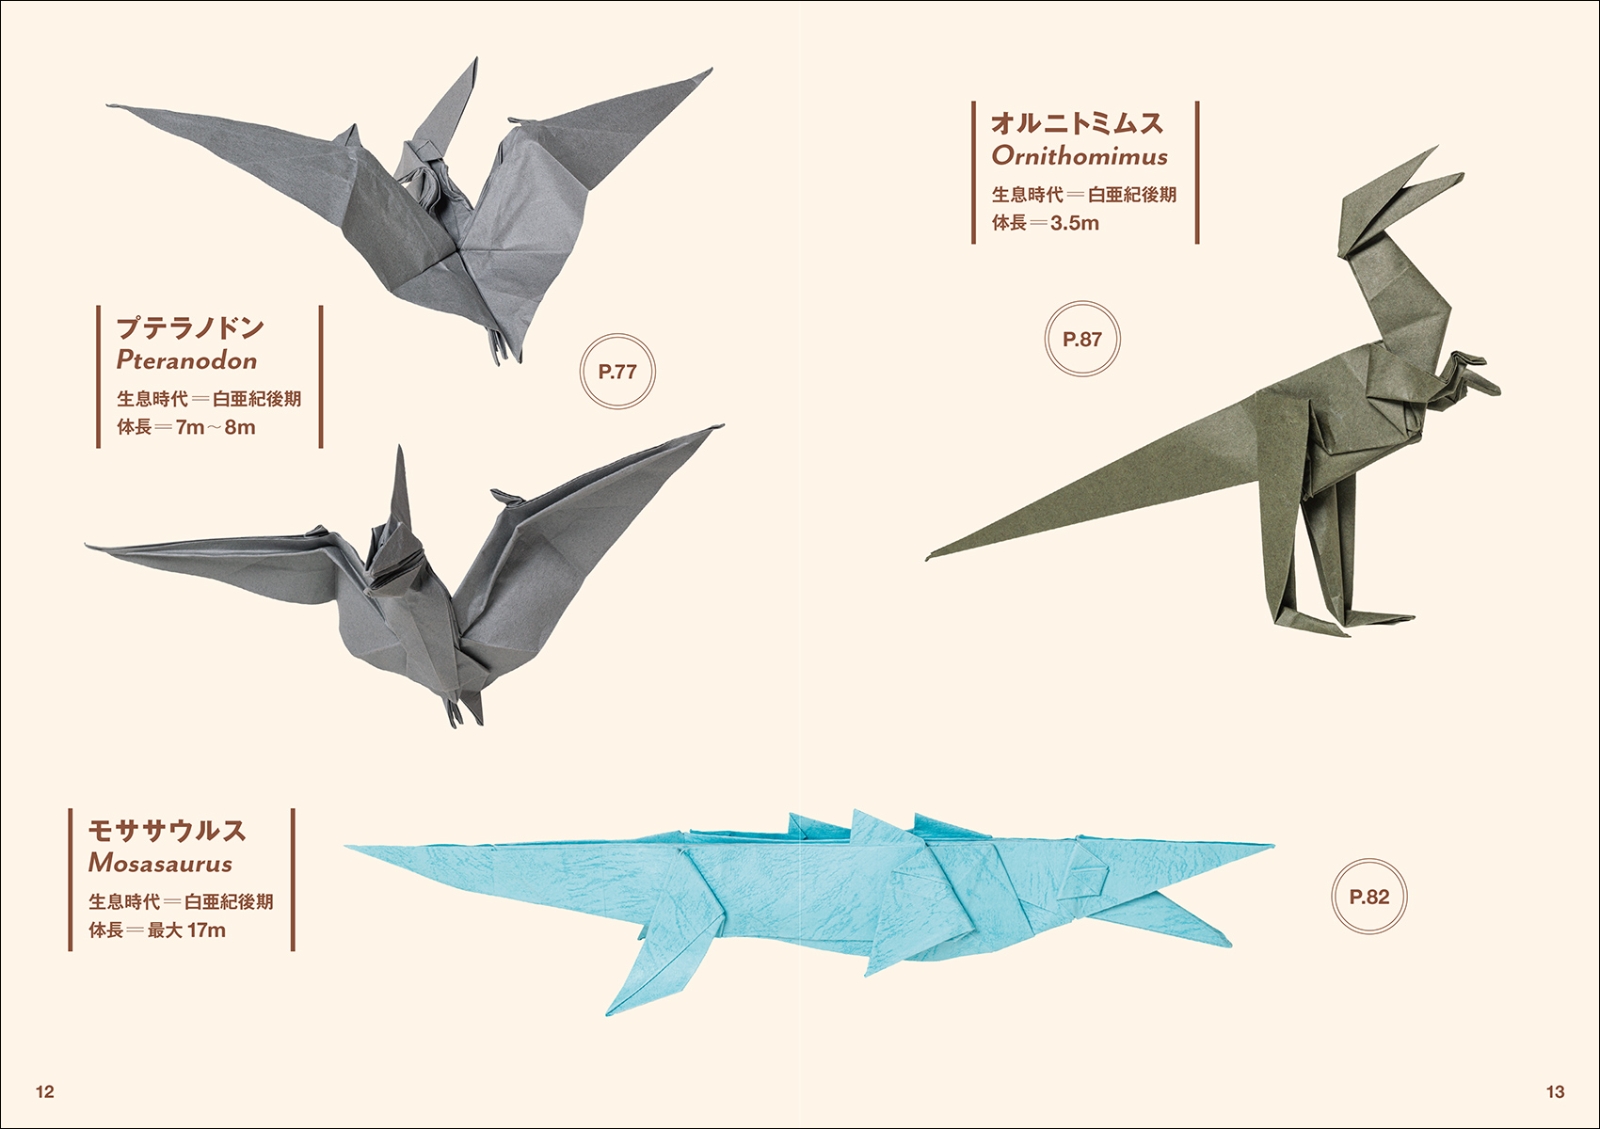 楽天ブックス 恐竜と古生物の折り紙 太古に暮らした生き物たちの造形美を紙で表現 川畑 文昭 本